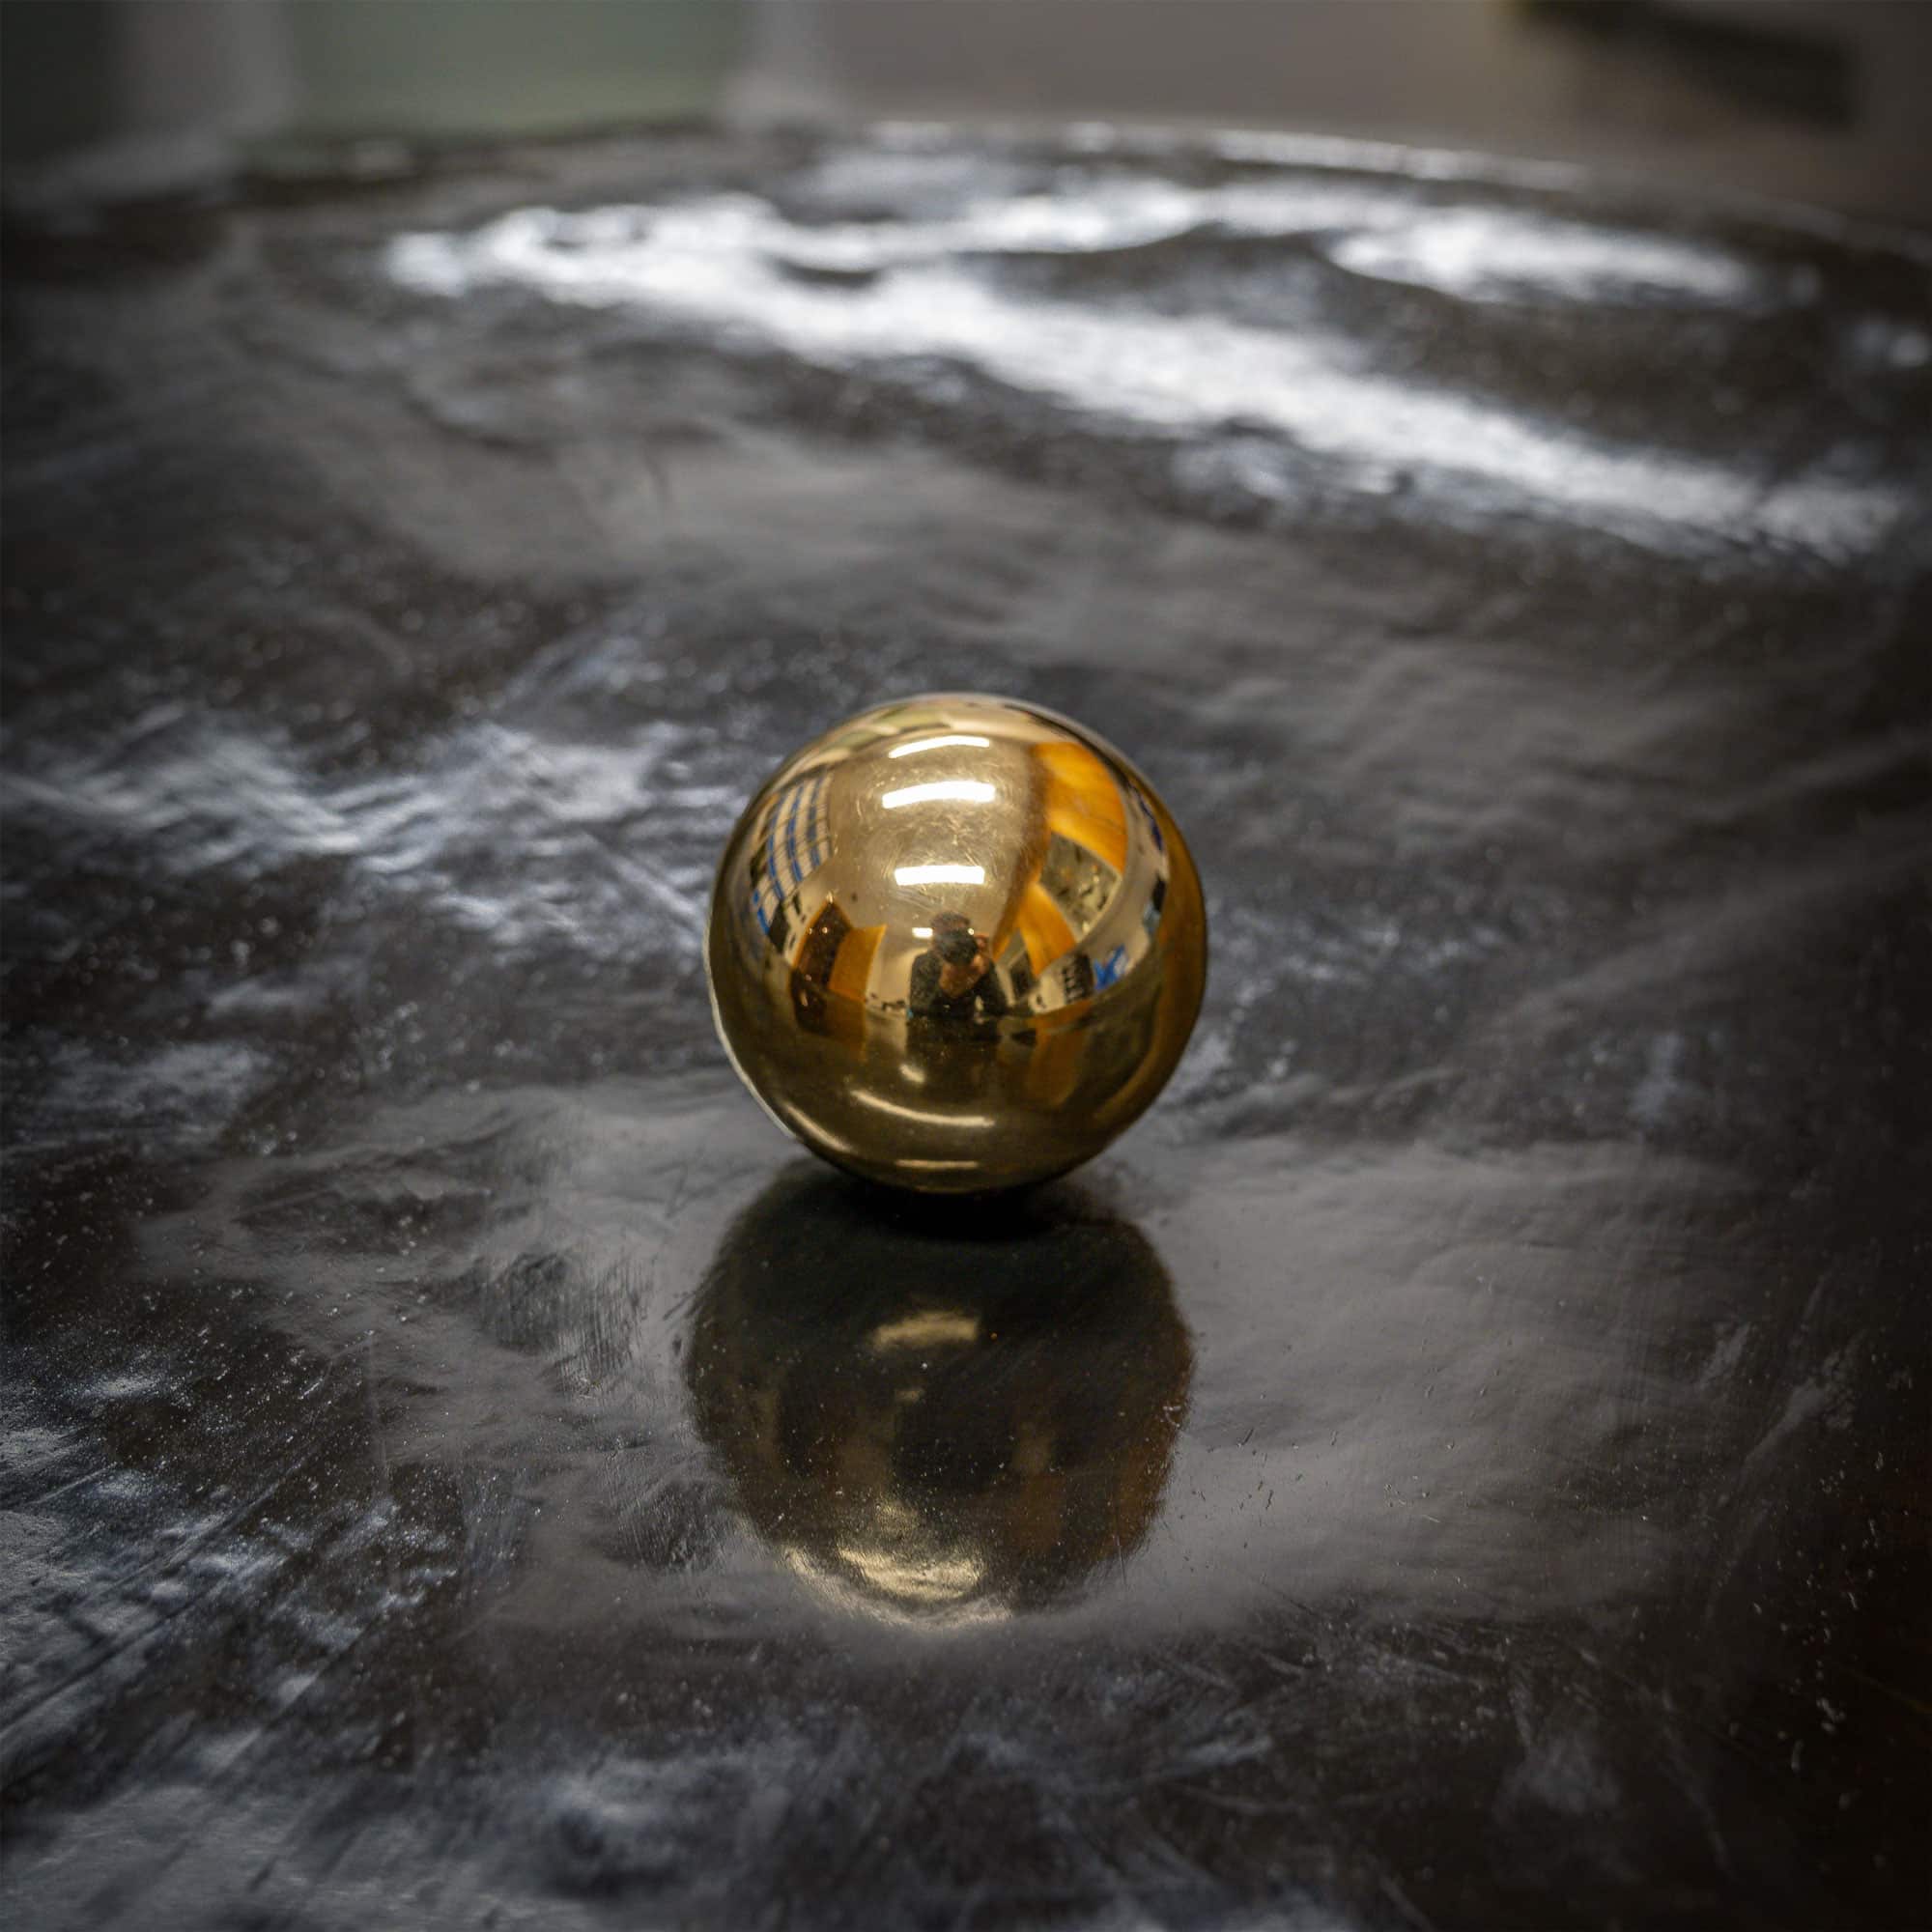 Kunstwerk mit dem Namen „Manipura“. Kugel 24 Karat vergoldet, Rahmen Metall, Bild Metall schwarz brüniert. Vom Stahlbildhauer im Atelier Daniel Springer